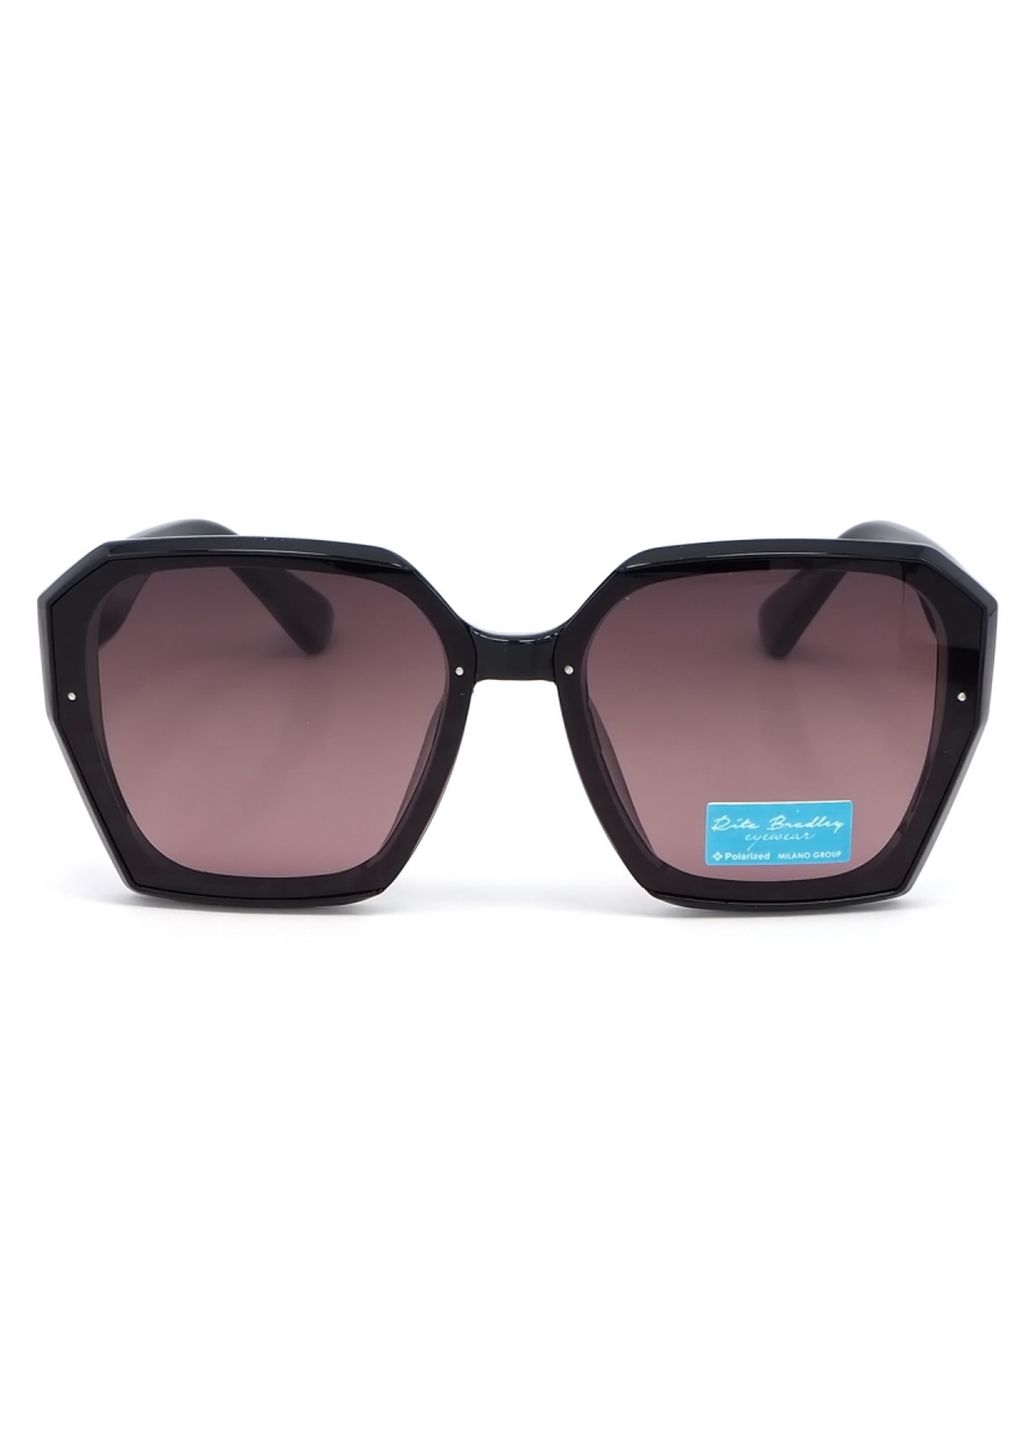 Купить Женские солнцезащитные очки Rita Bradley с поляризацией RB721 112028 в интернет-магазине